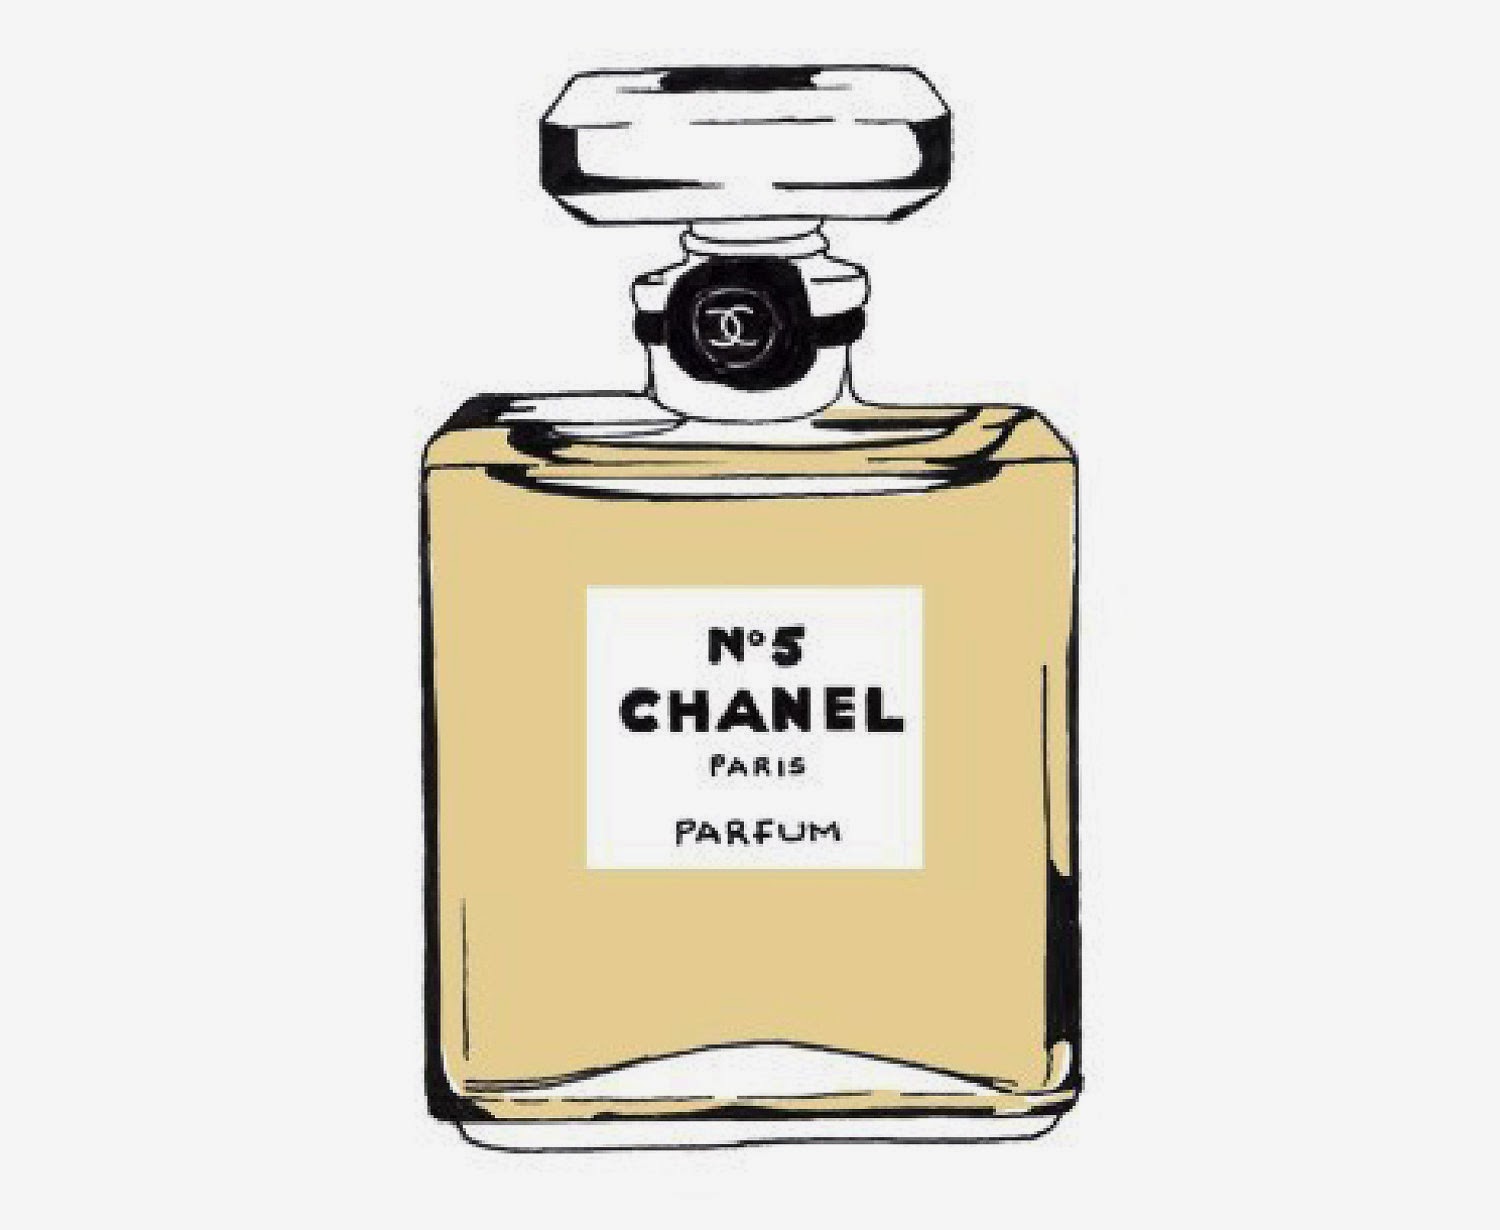 Kit De Chanel Para Imprimir Gratis Ideas Y Material Gratis Para Fiestas Y Celebraciones Oh My Fiesta